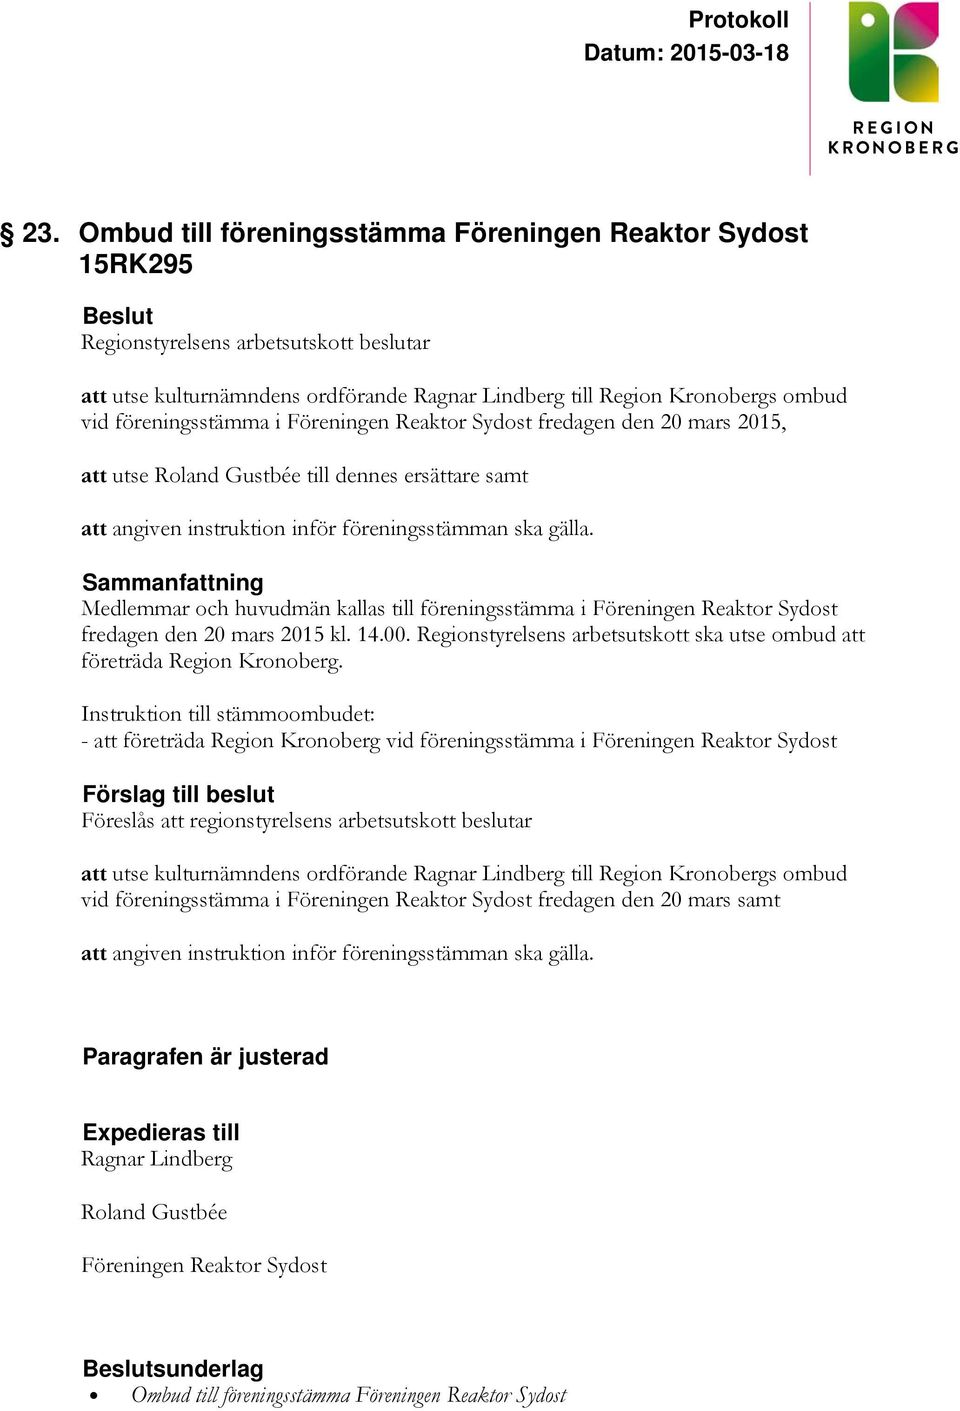 Medlemmar och huvudmän kallas till föreningsstämma i Föreningen Reaktor Sydost fredagen den 20 mars 2015 kl. 14.00. Regionstyrelsens arbetsutskott ska utse ombud att företräda Region Kronoberg.